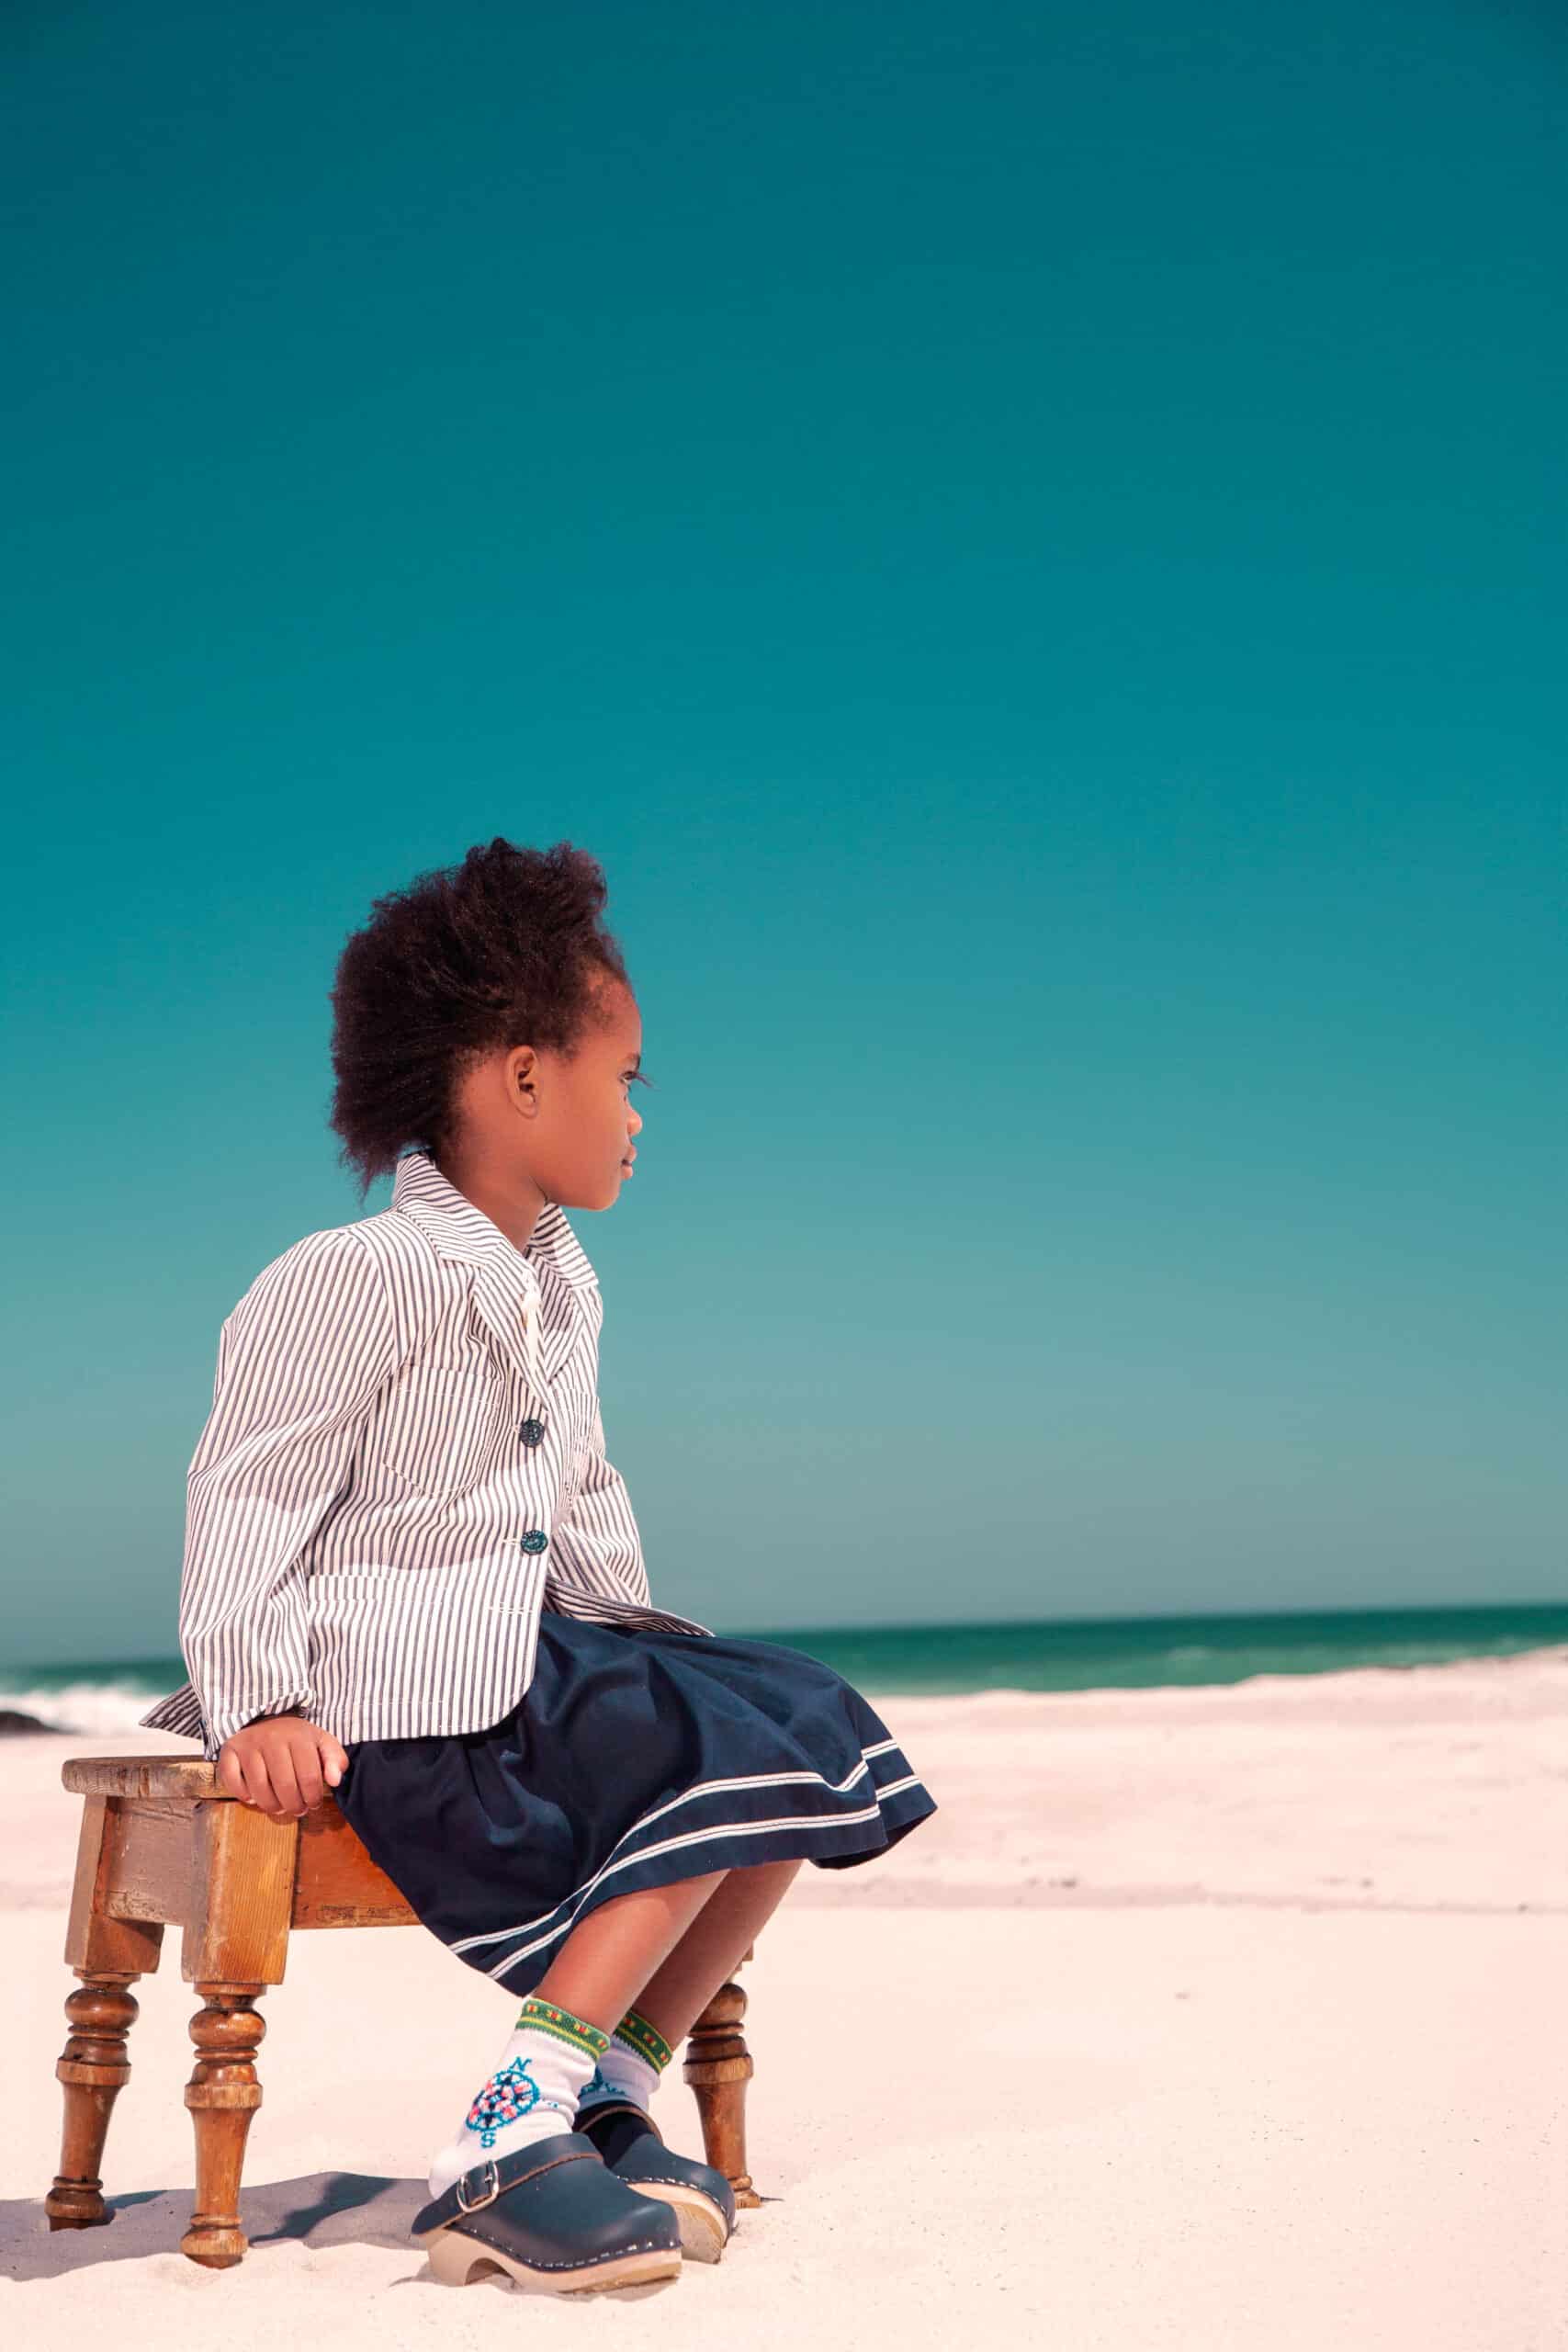 Ein kleines Kind mit dunklem, lockigem Haar, bekleidet mit einem gestreiften Hemd und einem marineblauen Rock, sitzt auf einem verzierten Holzstuhl an einem Sandstrand und blickt unter einem klaren blauen Himmel auf das Meer. © Fotografie Tomas Rodriguez